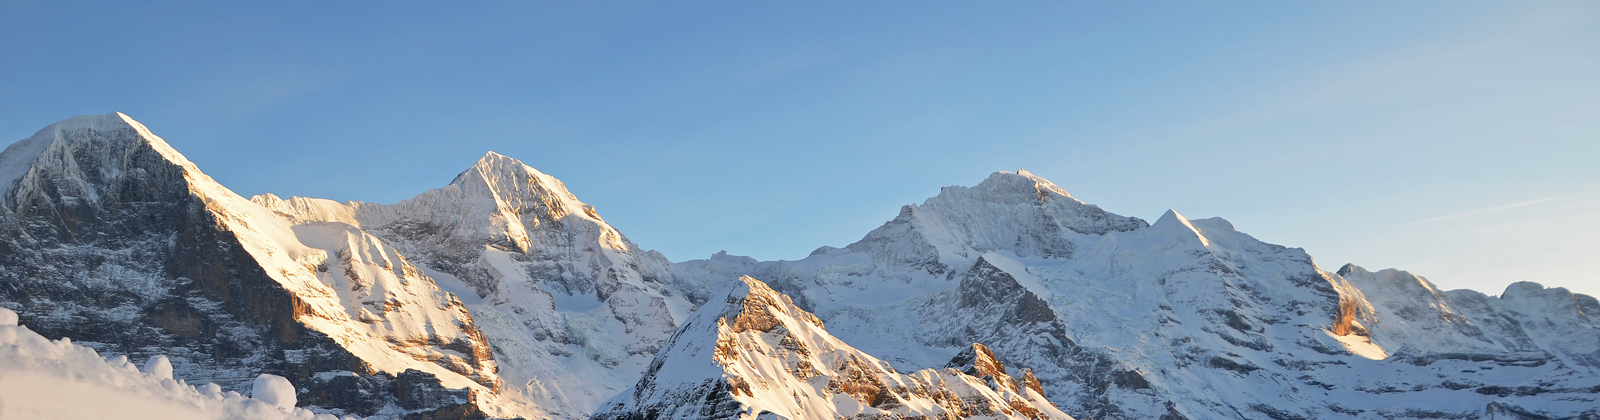 Blickpunkt Berner Oberland im Januar 2020